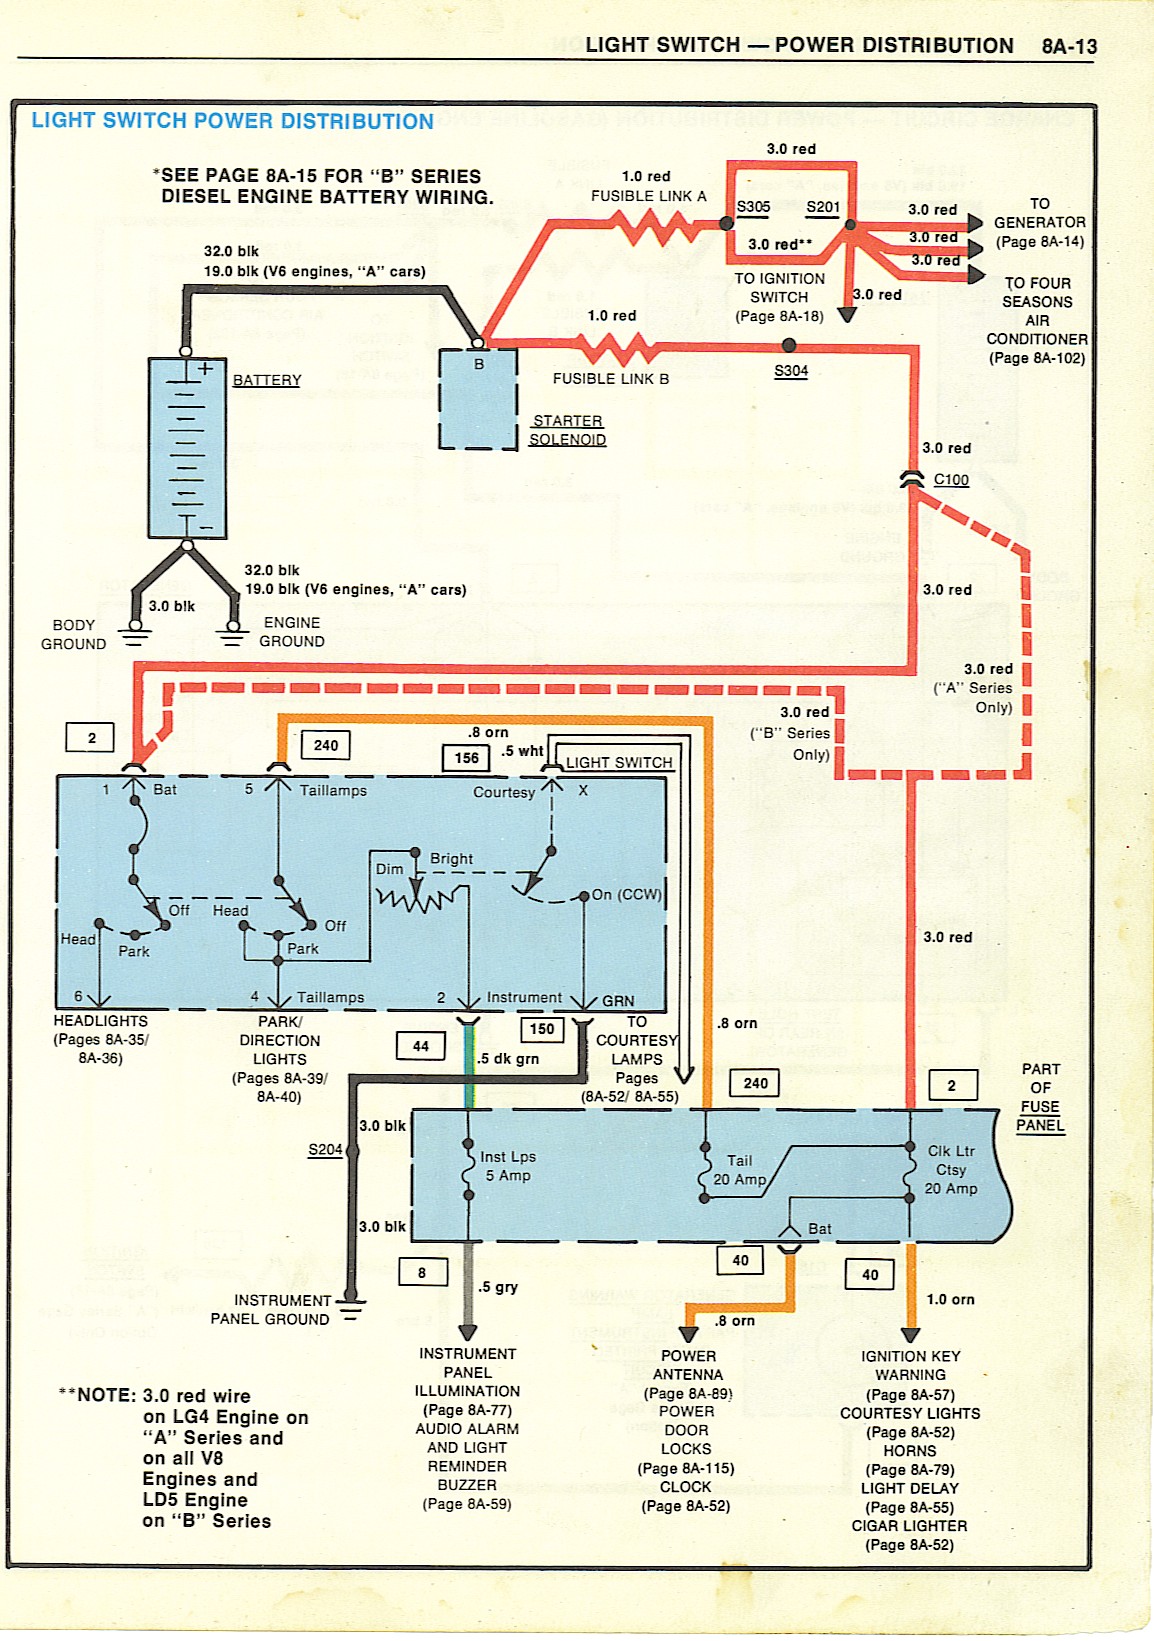 help reading electrical diagram - El Camino Central Forum ... 1986 el camino wiring diagram 